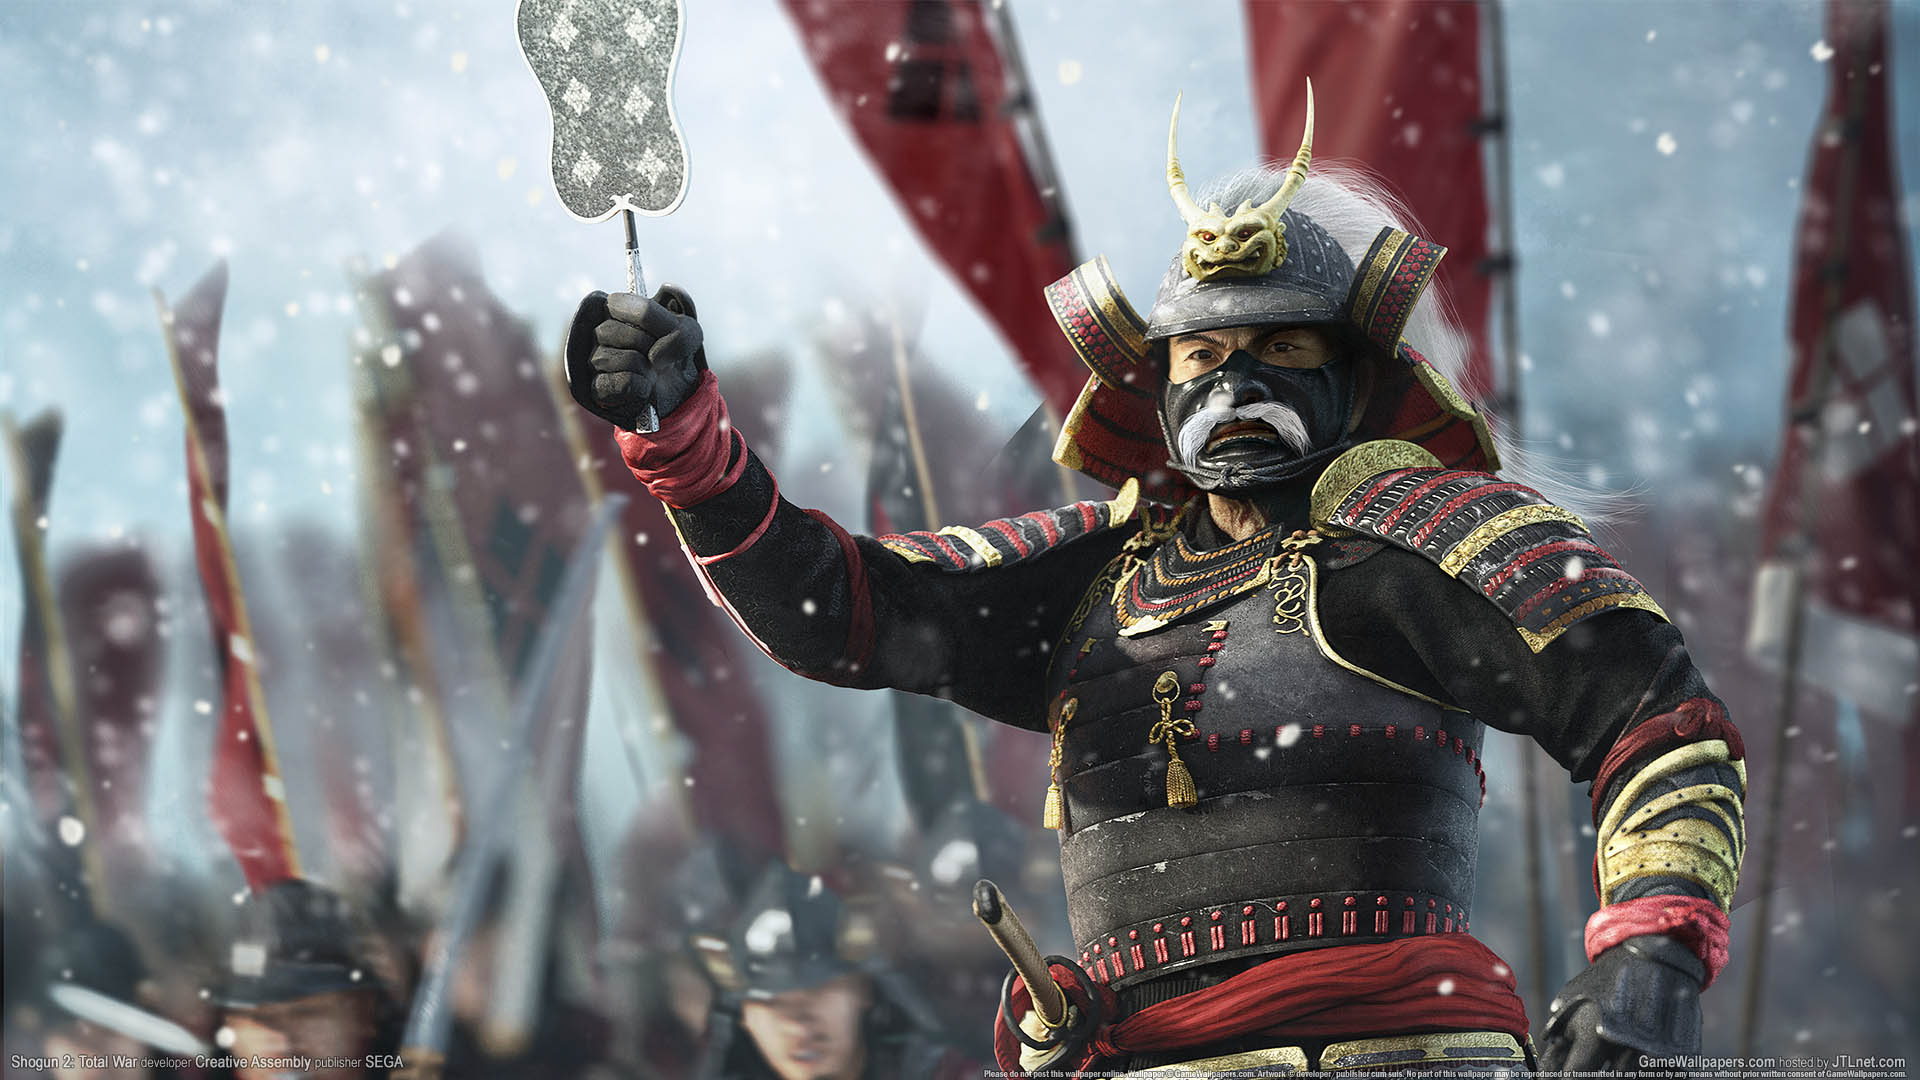 Shogun 2: Total War fond d'cran 04 1920x1080